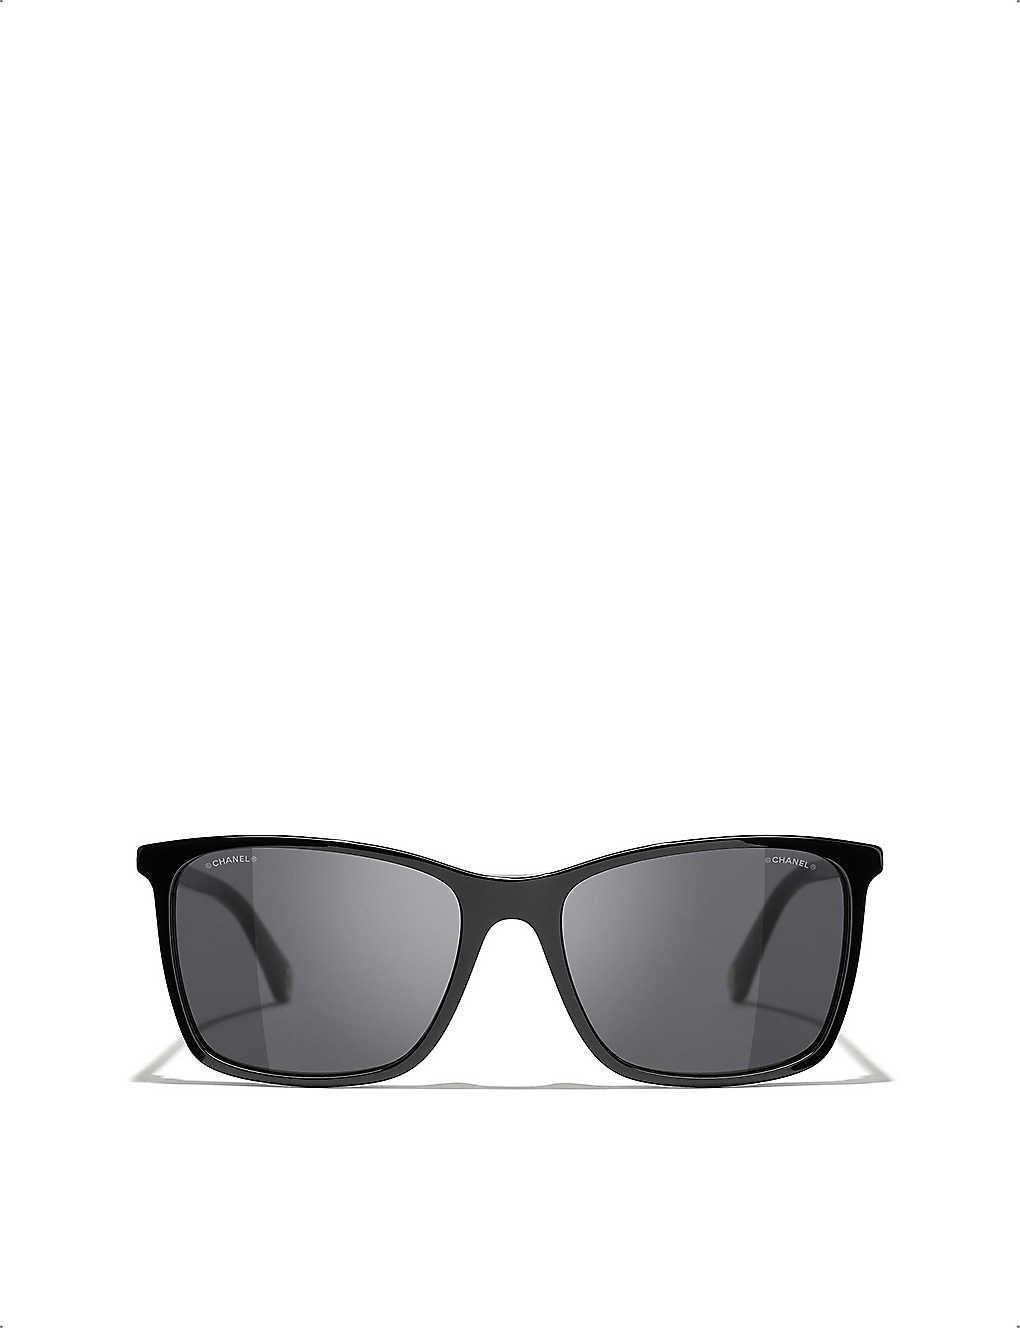 Chanel Square Sunglasses in Gray